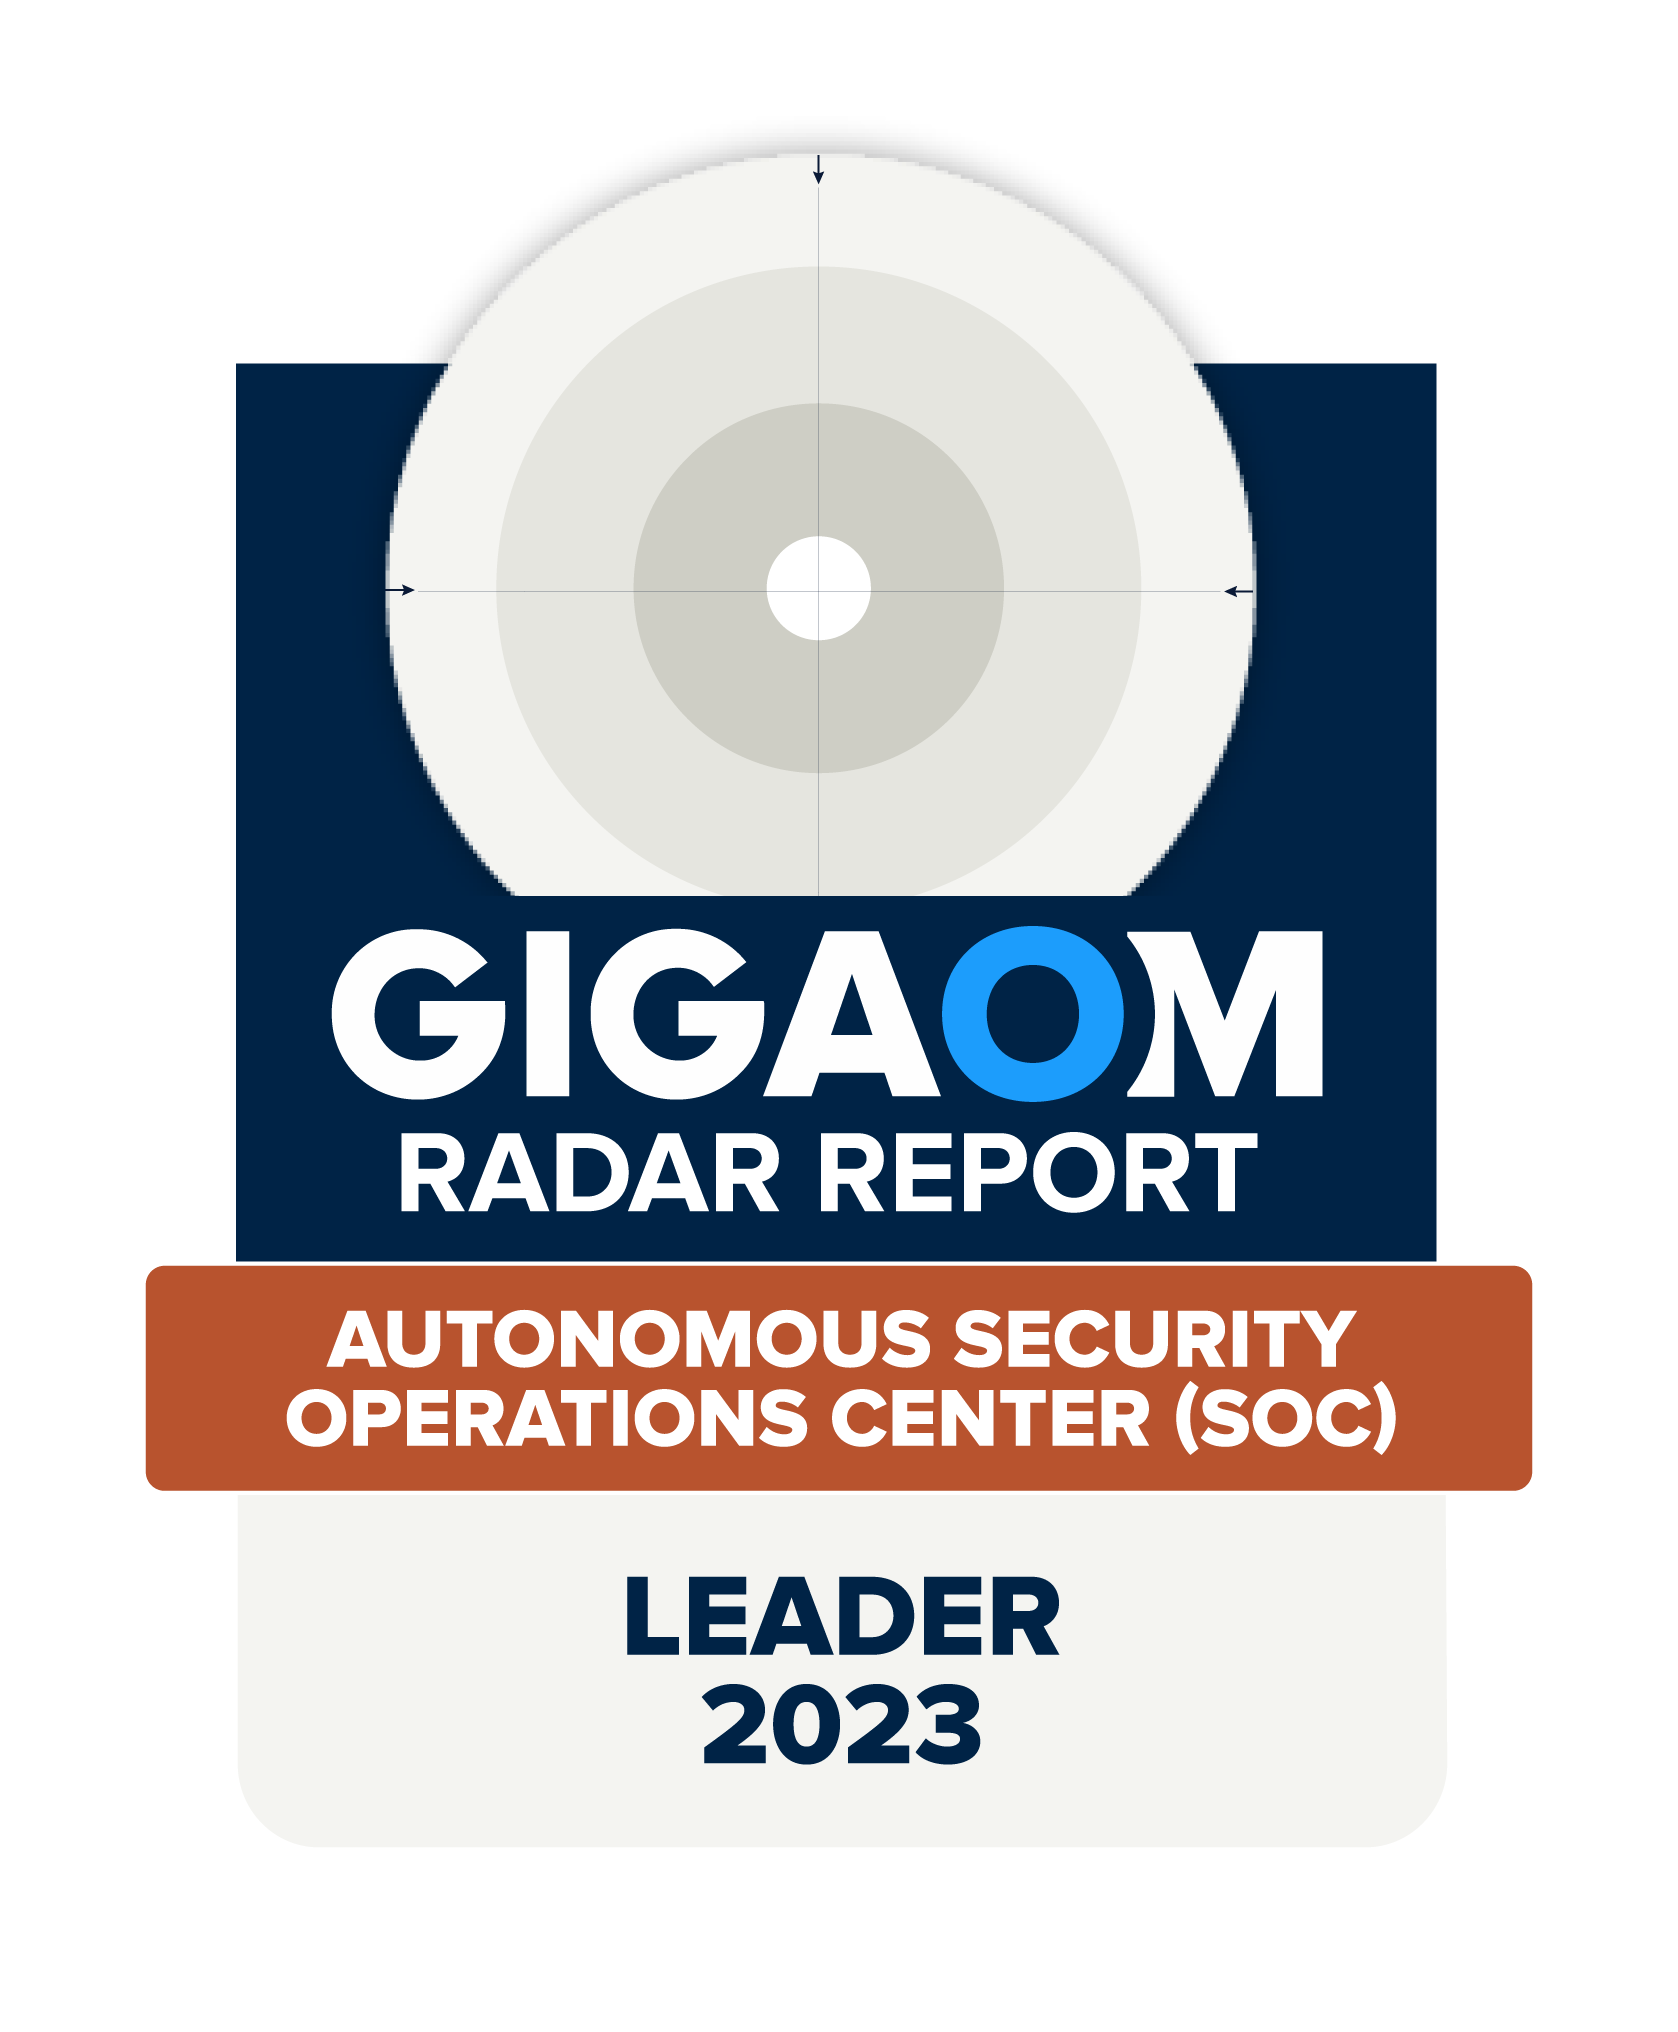 GIGAOM Radar Report, Autonomous security operations center, leader 2023